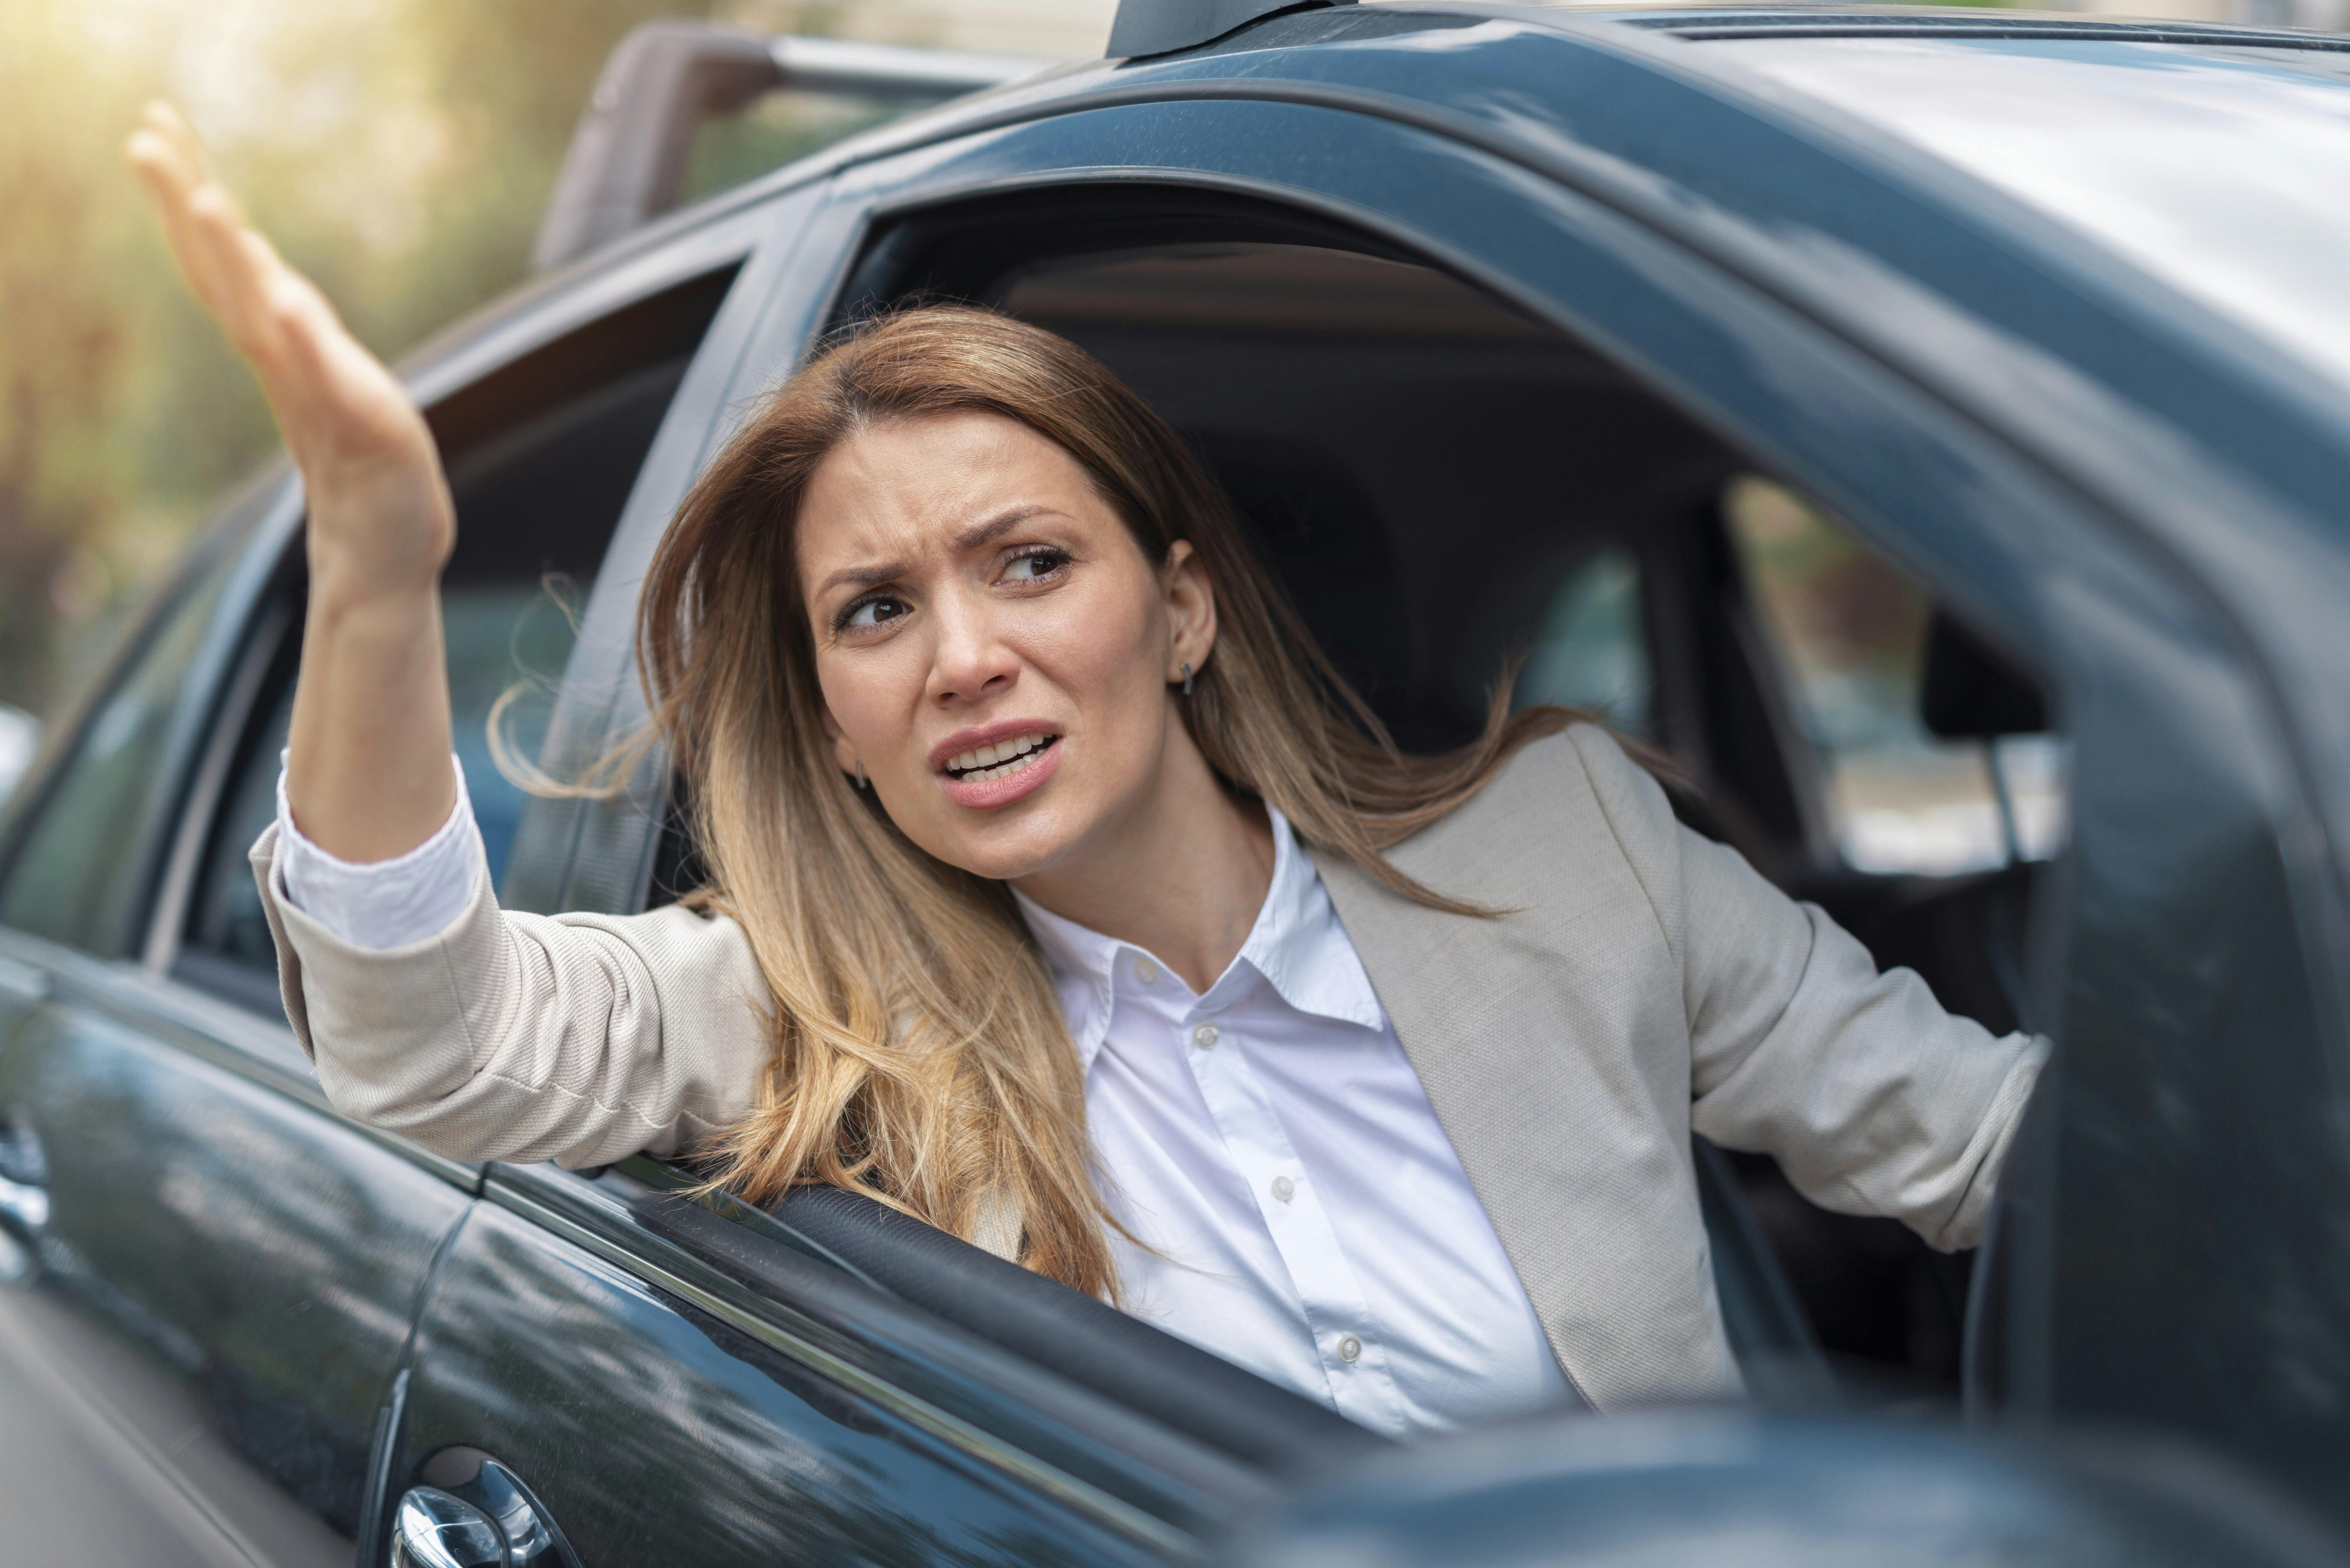 Kvinde råber ud af vinduet, mens hun sidder i en bil